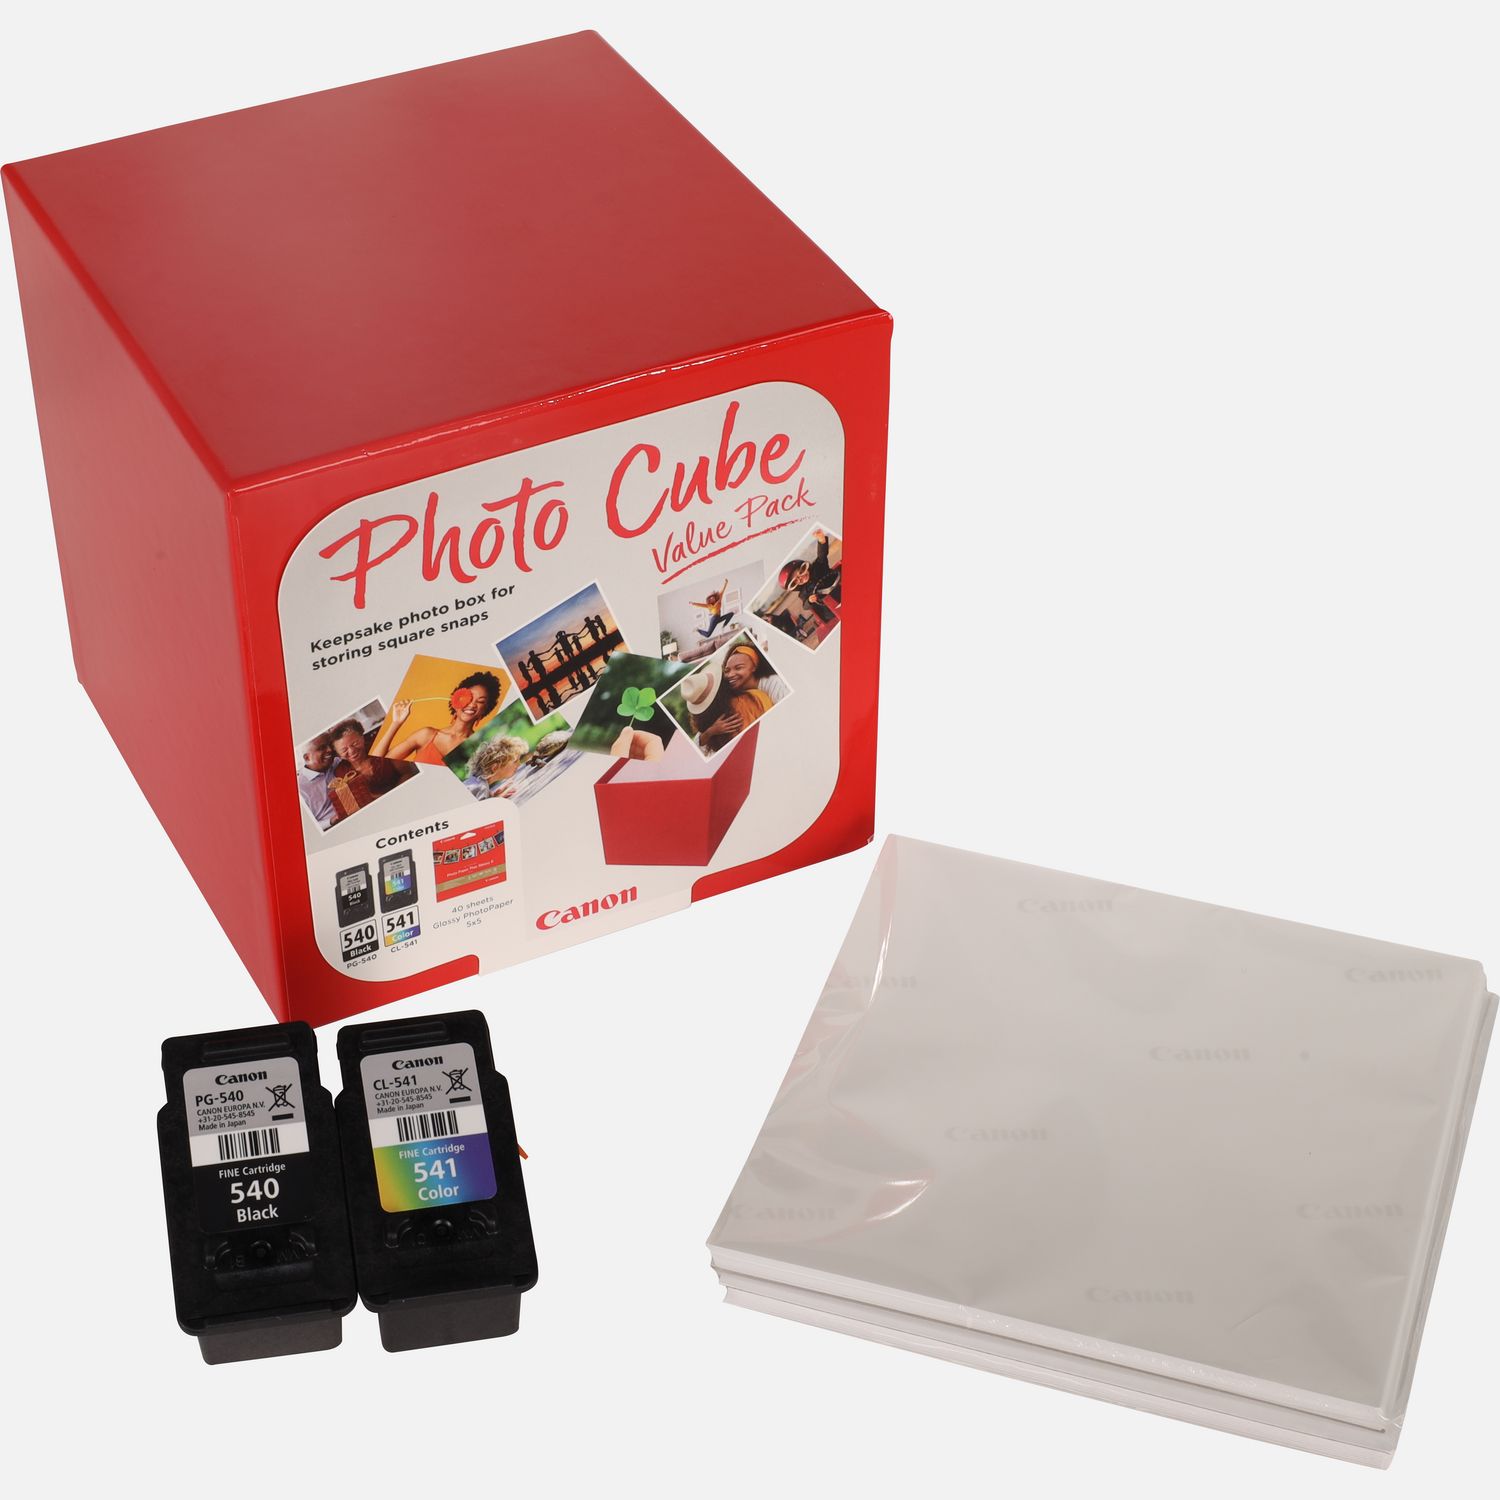 Canon Photo Cube con cartucce d'inchiostro PG-540 + CL-541 + carta fotografica lucida Plus Glossy II PP-201 5x5